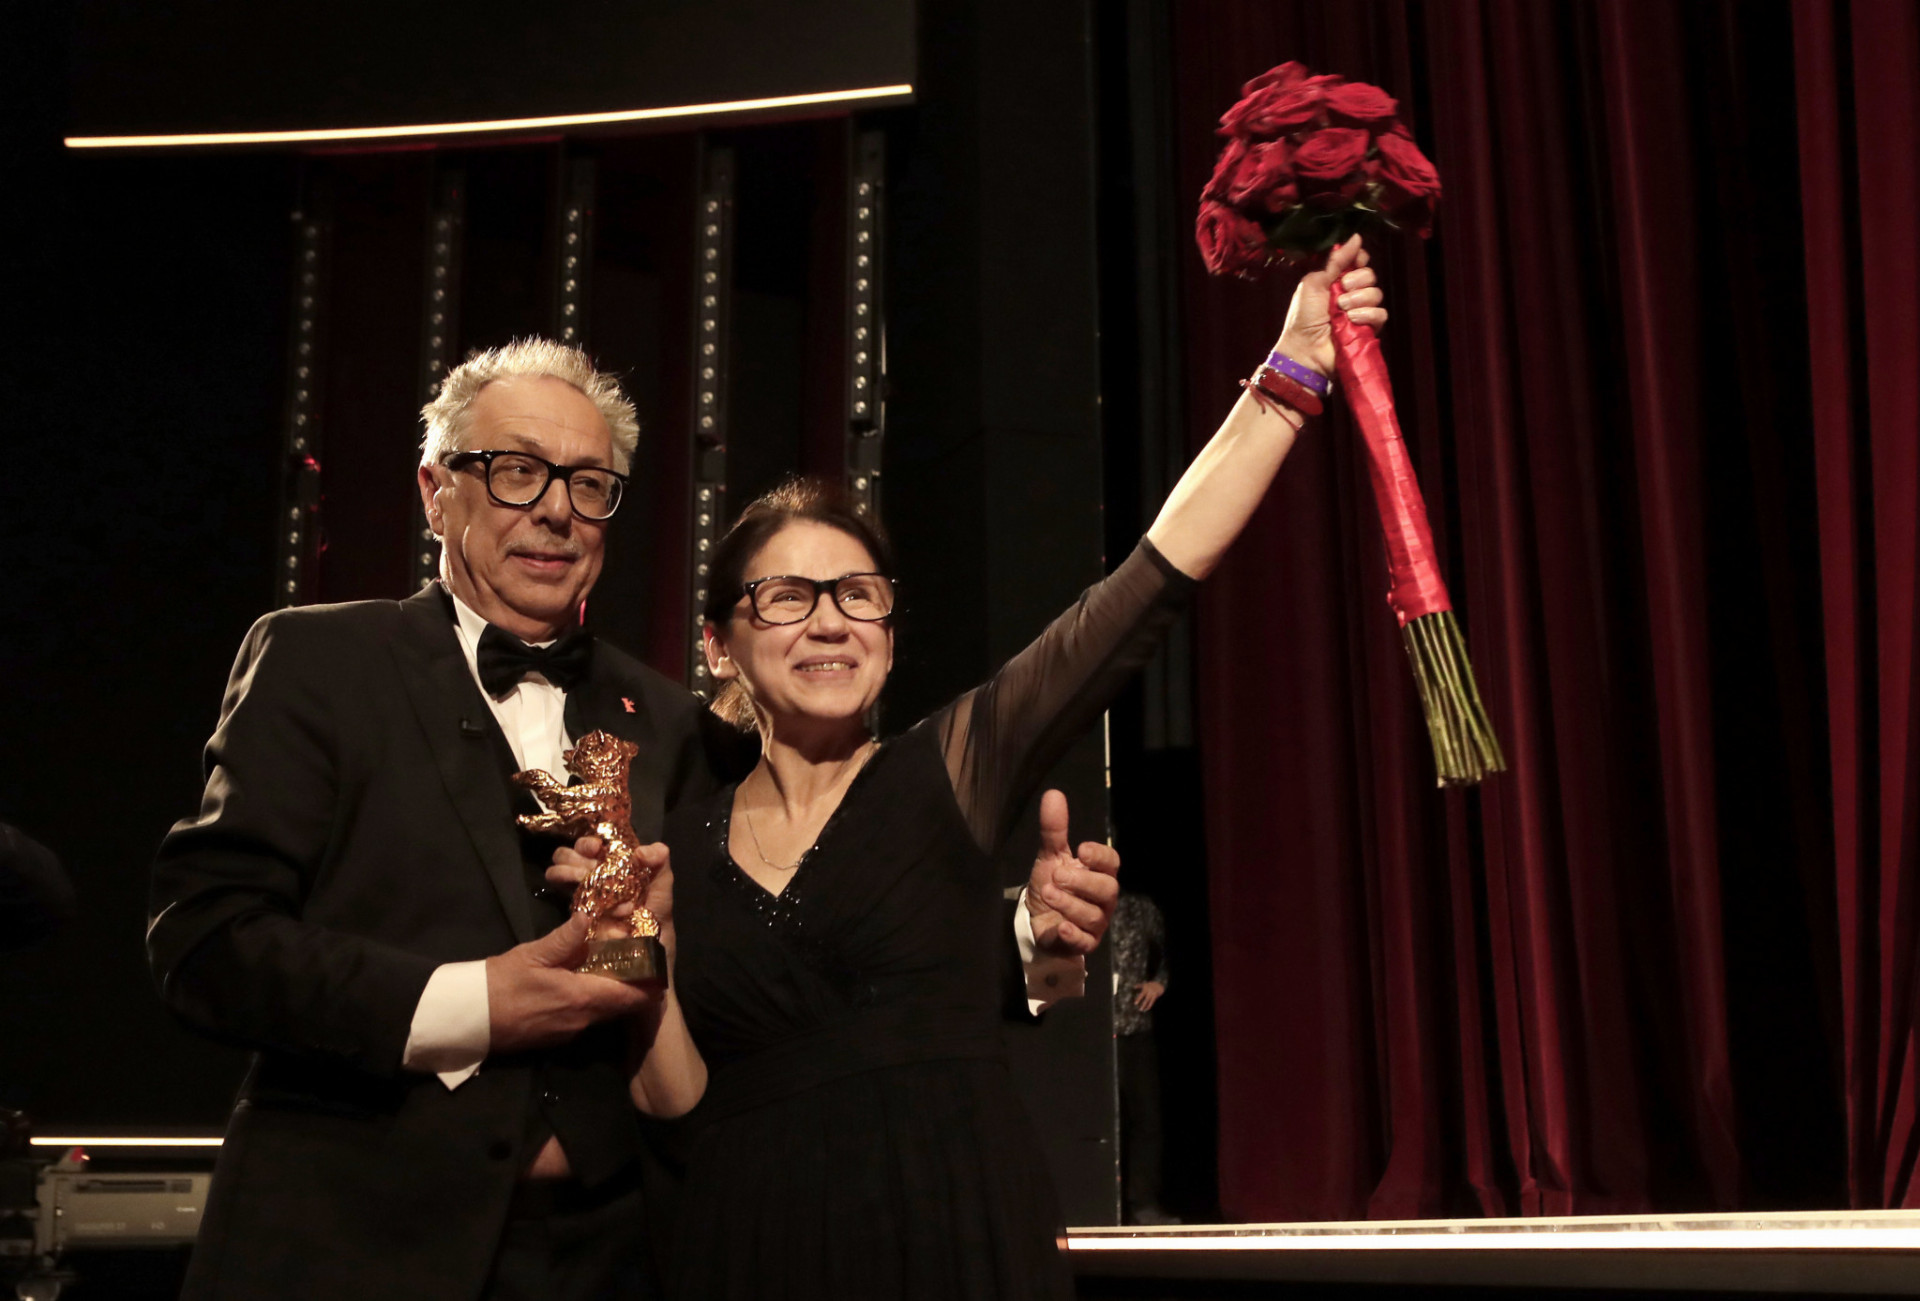 Riaditeľ medzinárodného filmového festivalu Berlinale Dieter Kosslick pózuje s maďarskou režisérkou Ildikó Enyediovou, ktorá si prevzala cenu Zlatý medveď za film Telo a duša